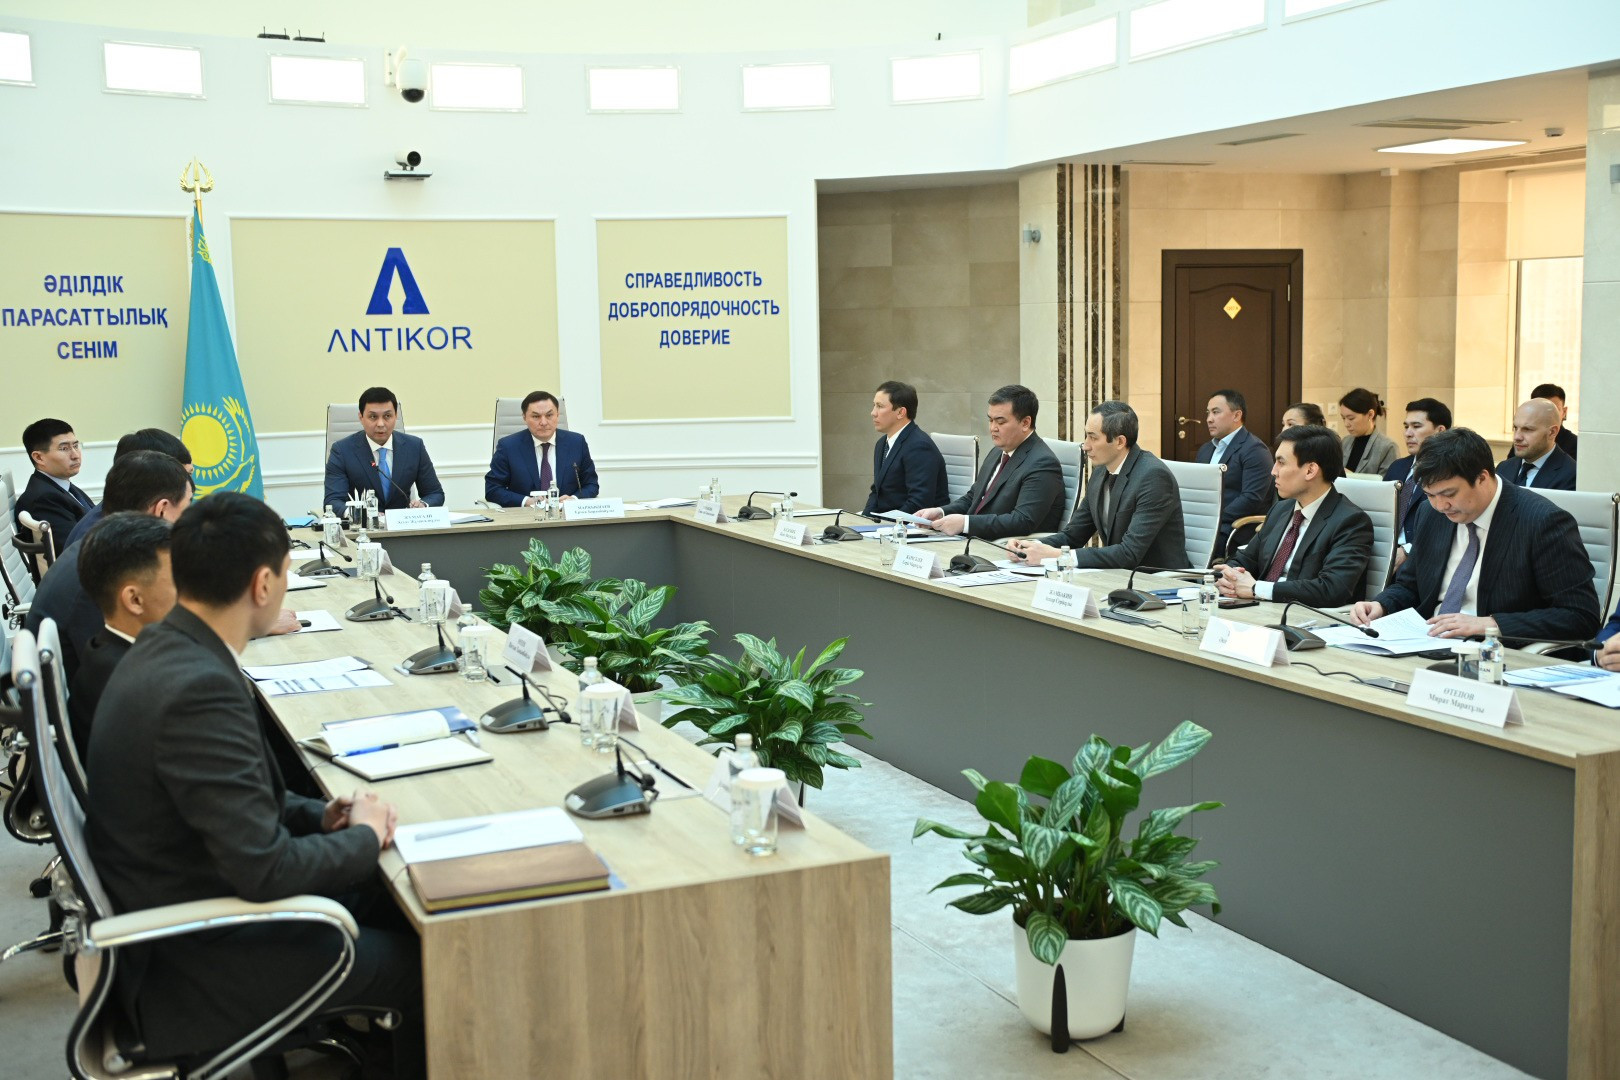 Вы сейчас просматриваете Президент НОК РК Геннадий Головкин принял участие в совещании Агентства по противодействию коррупции РК